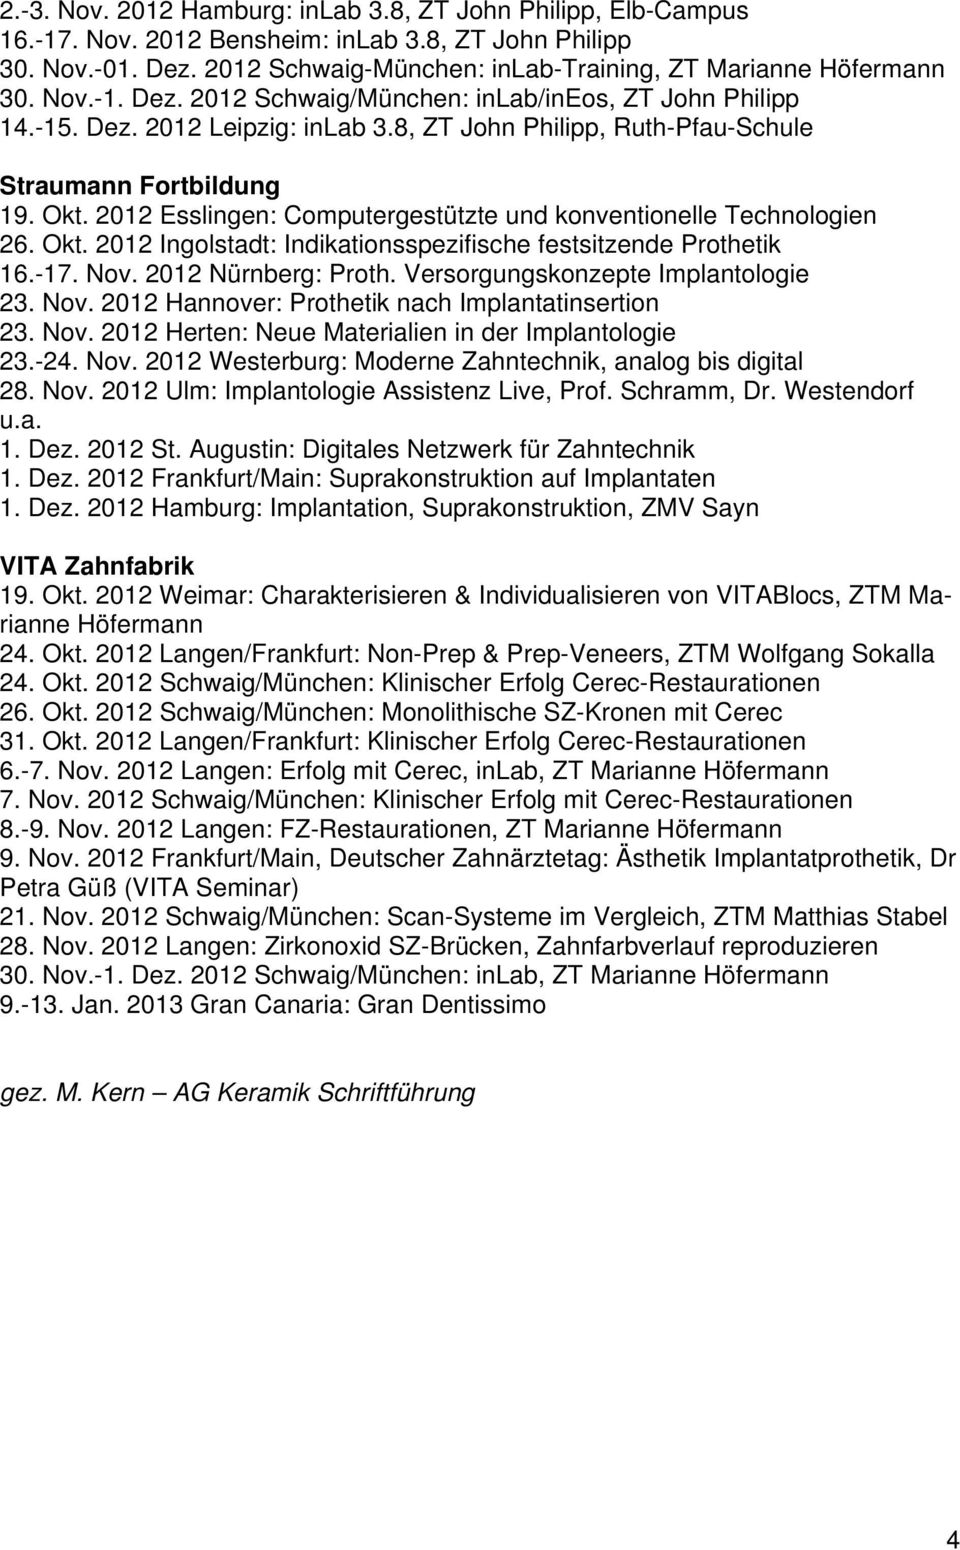 2012 Esslingen: Computergestützte und konventionelle Technologien 26. Okt. 2012 Ingolstadt: Indikationsspezifische festsitzende Prothetik 16.-17. Nov. 2012 Nürnberg: Proth.